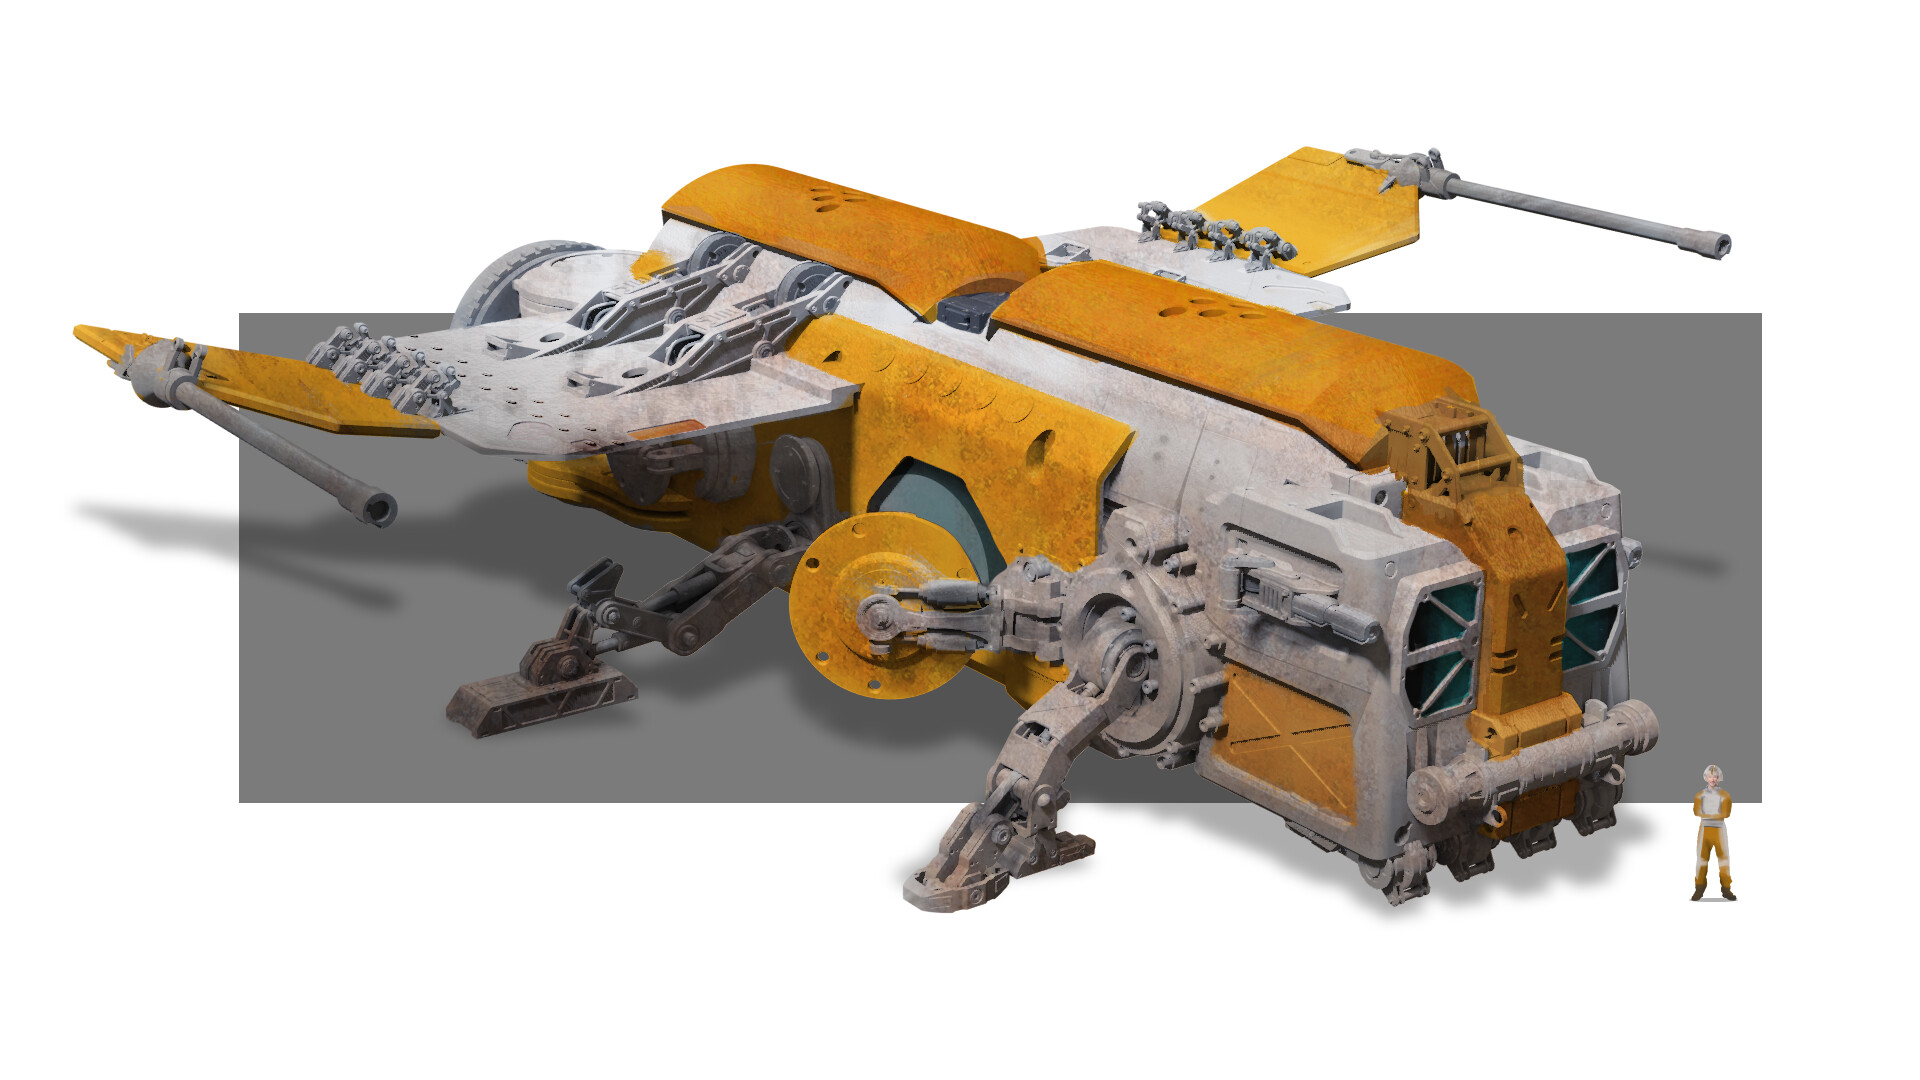 ArtStation - Star wars inspired spaceship concept